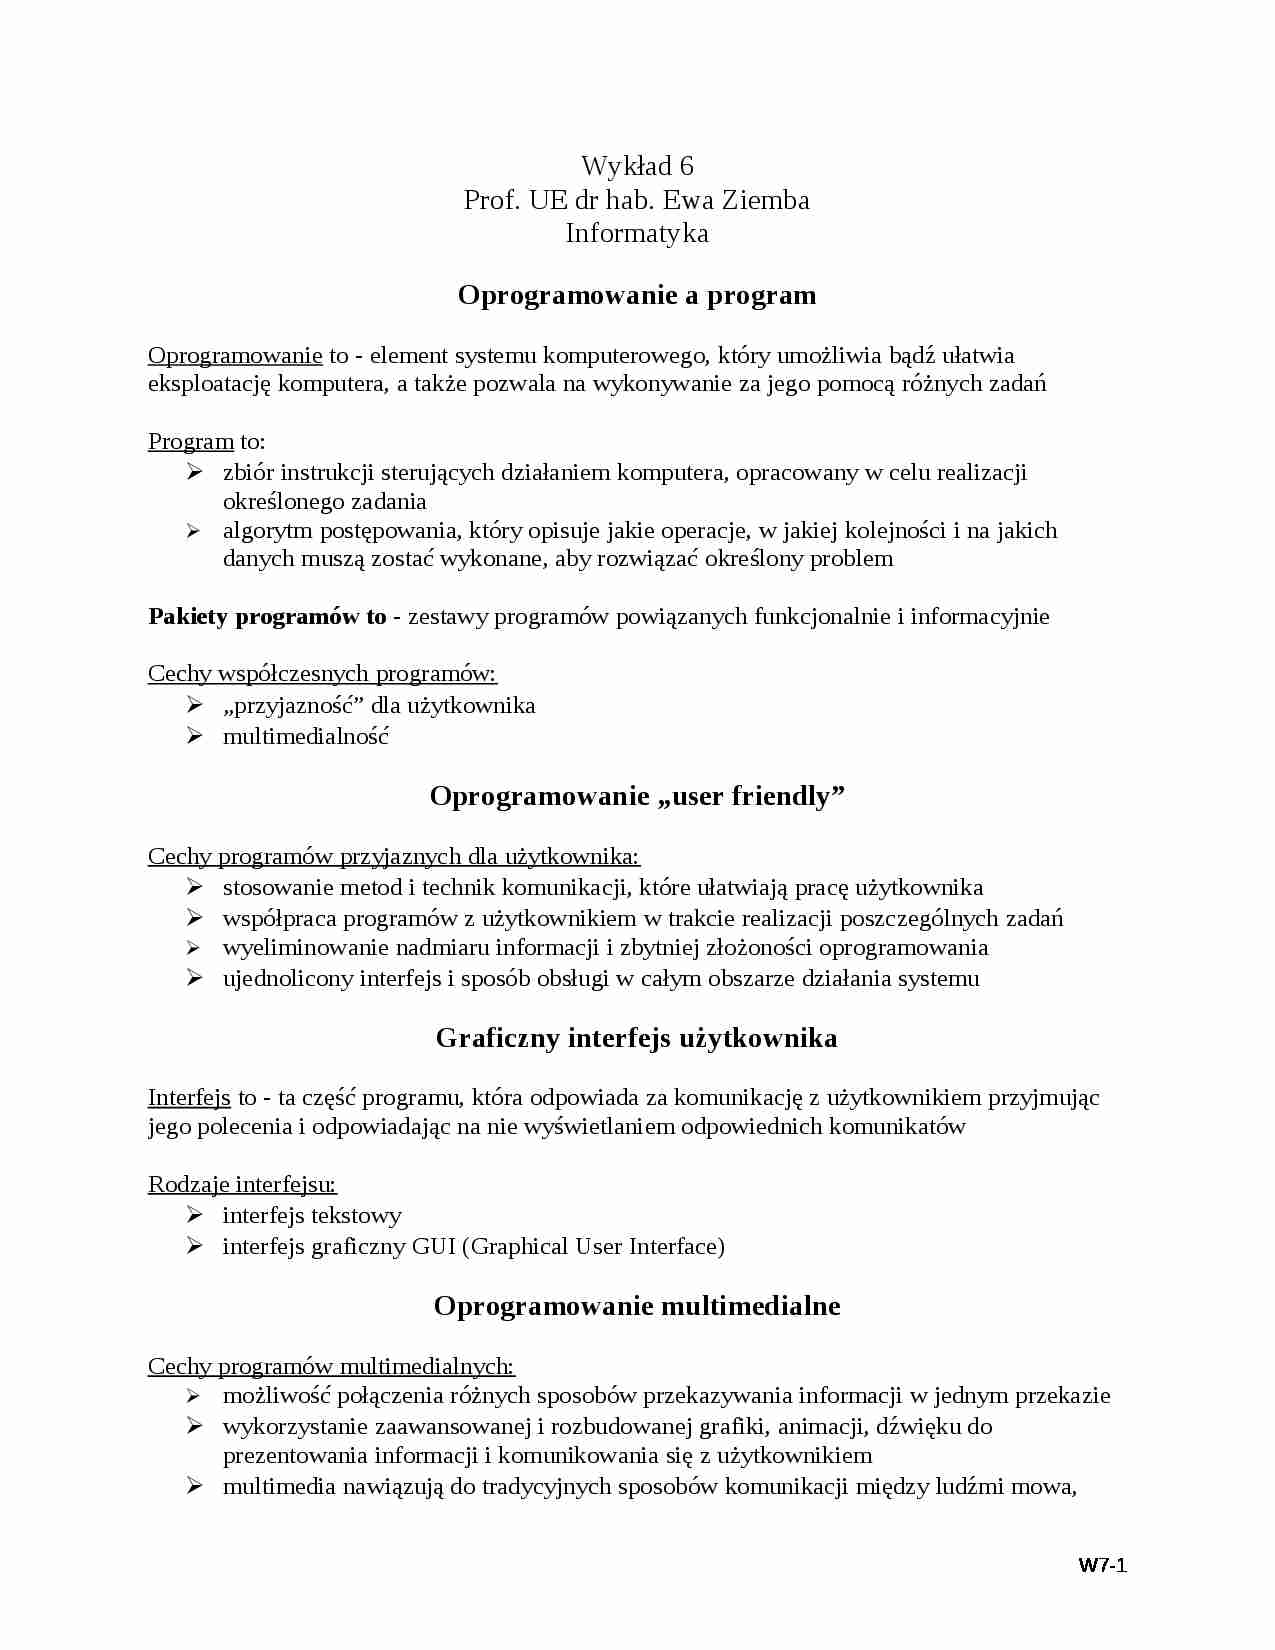 Wykład - Oprogramowanie a program - strona 1